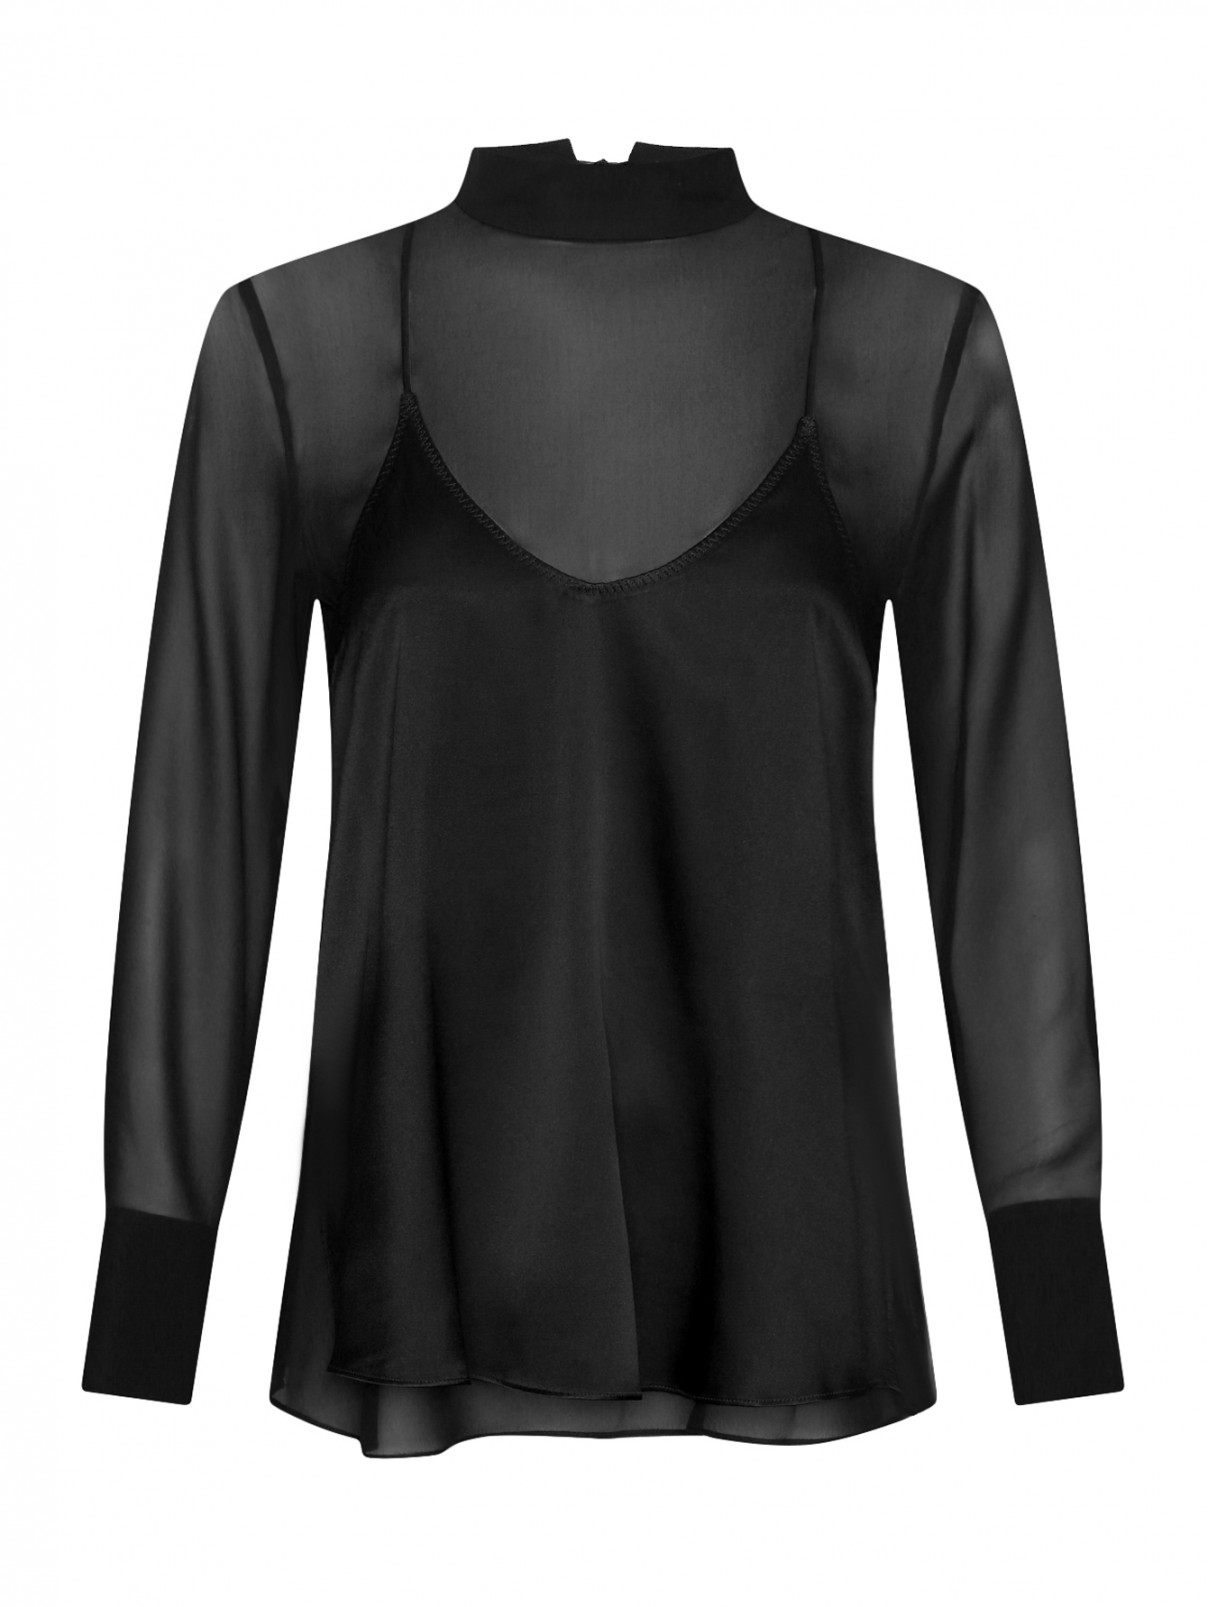 Полупрозрачная блуза из шелка Dorothee Schumacher  –  Общий вид  – Цвет:  Черный